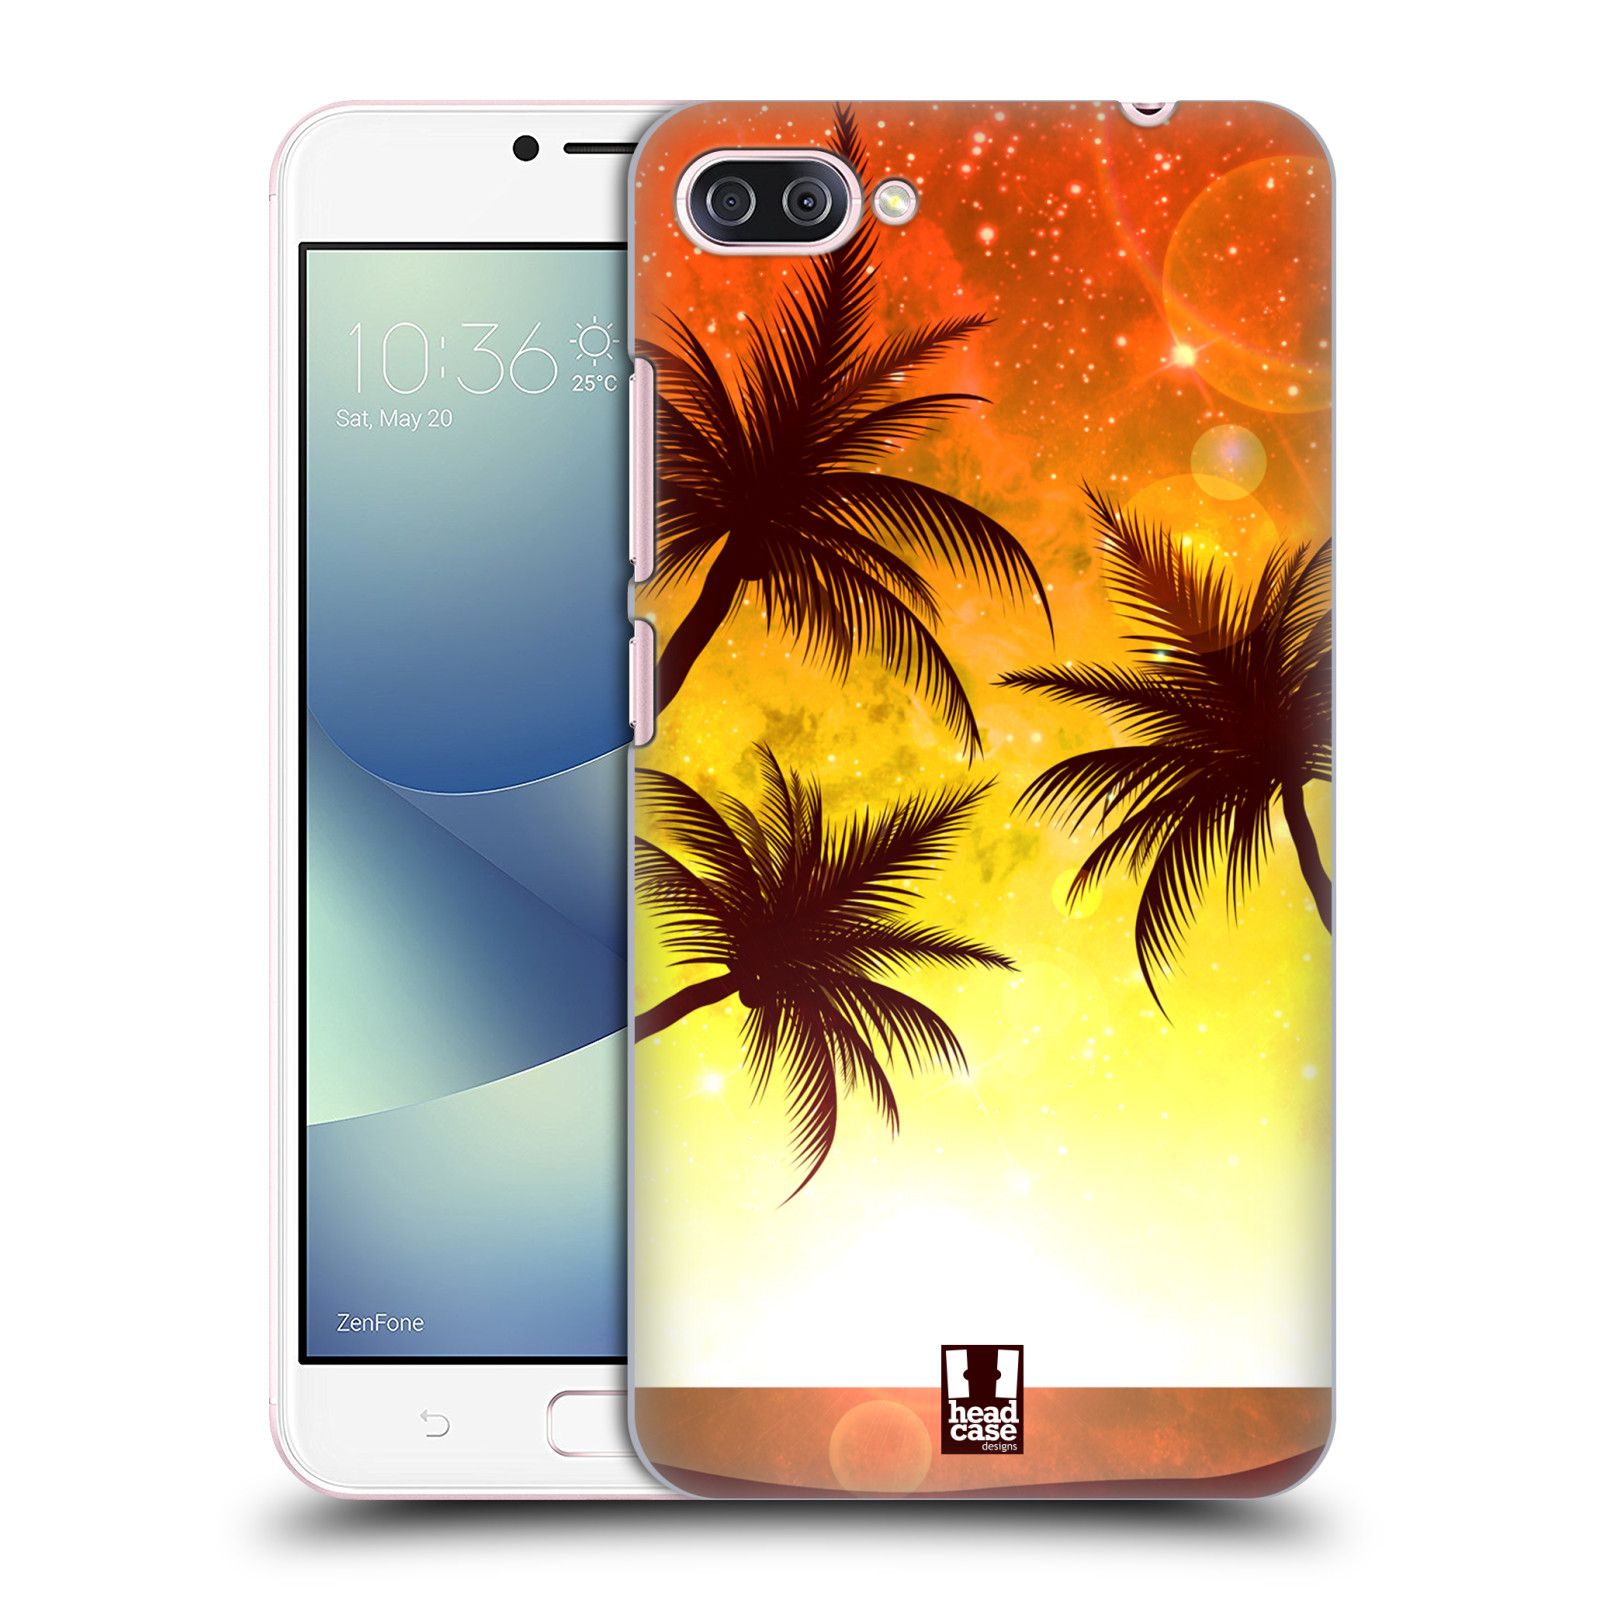 HEAD CASE plastový obal na mobil Asus Zenfone 4 MAX ZC554KL vzor Kreslený motiv silueta moře a palmy ORANŽOVÁ